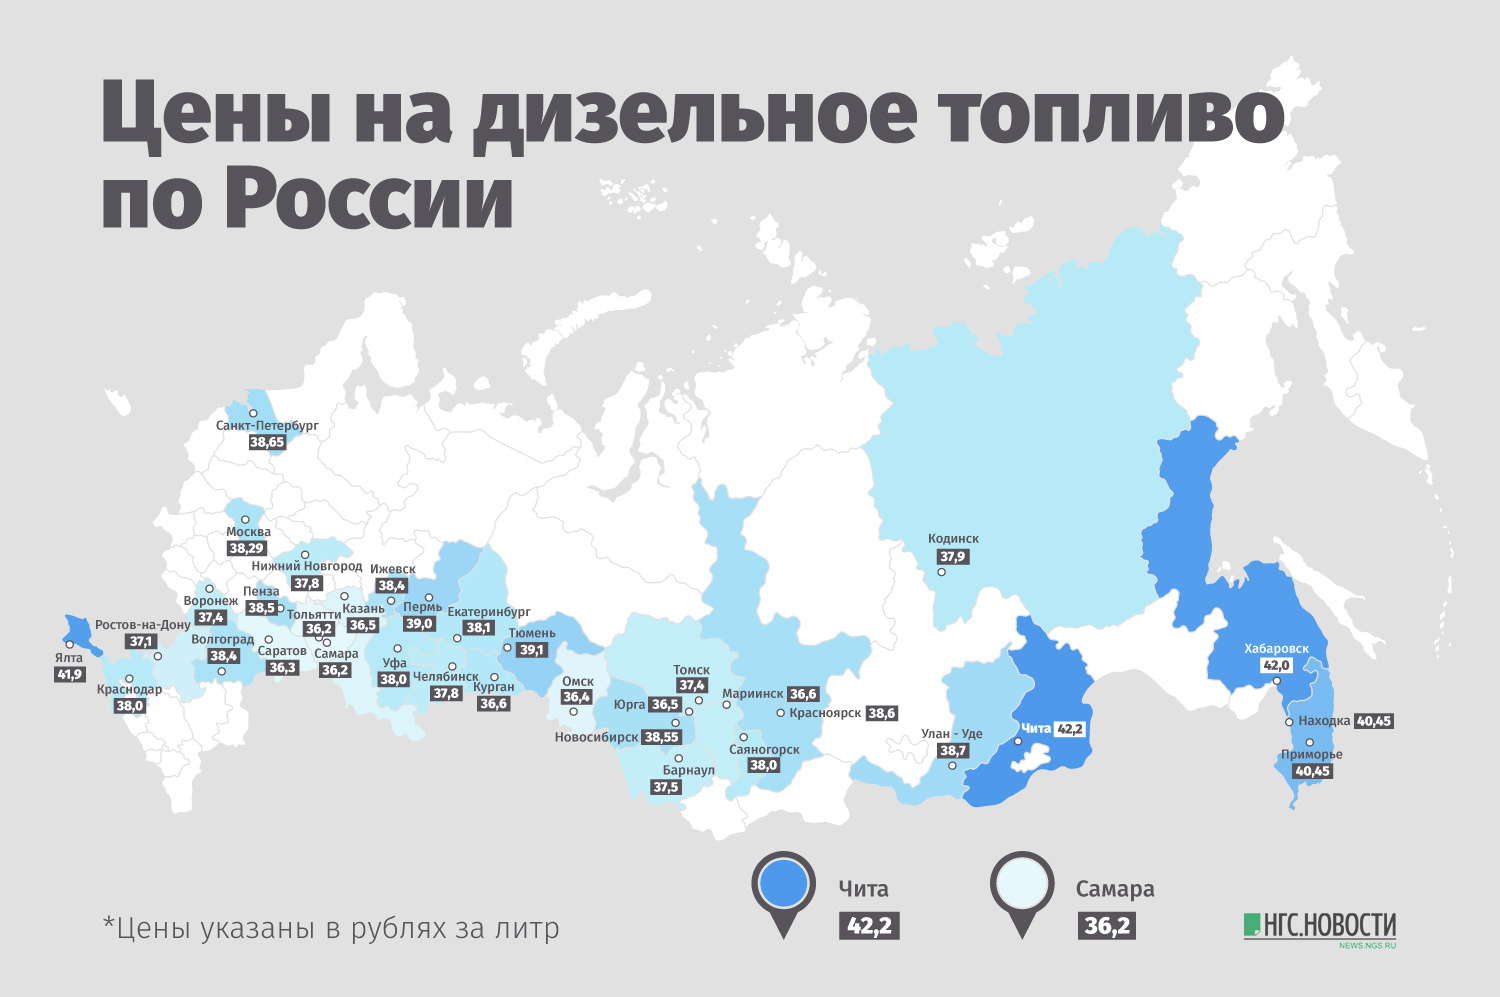 В красноярске сколько будет час. Сколько будет стоить бензин 2030. Сколько стоит бензин в 2030. Сколько стоит бензин в Красноярске. Красноярске на сколько газифицирован.